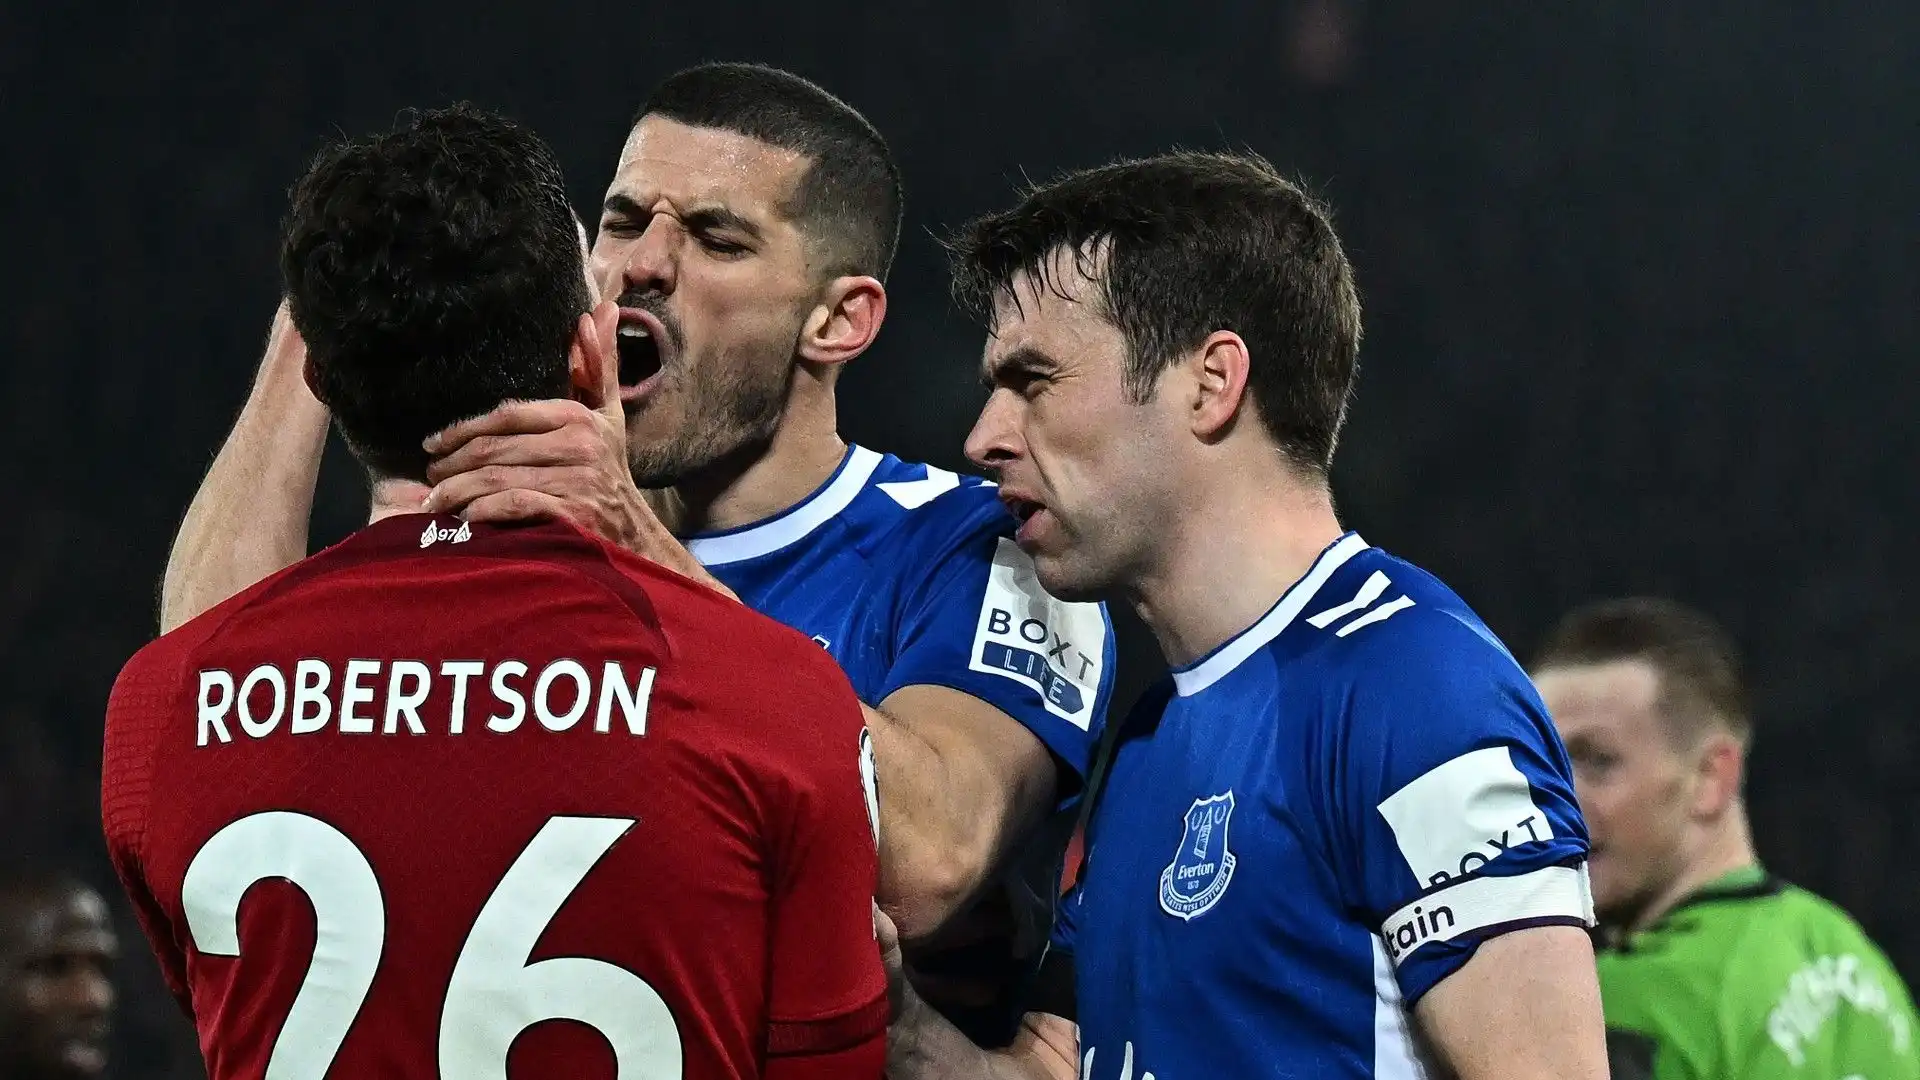 Robertson fa infuriare i calciatori dell'Everton: le immagini